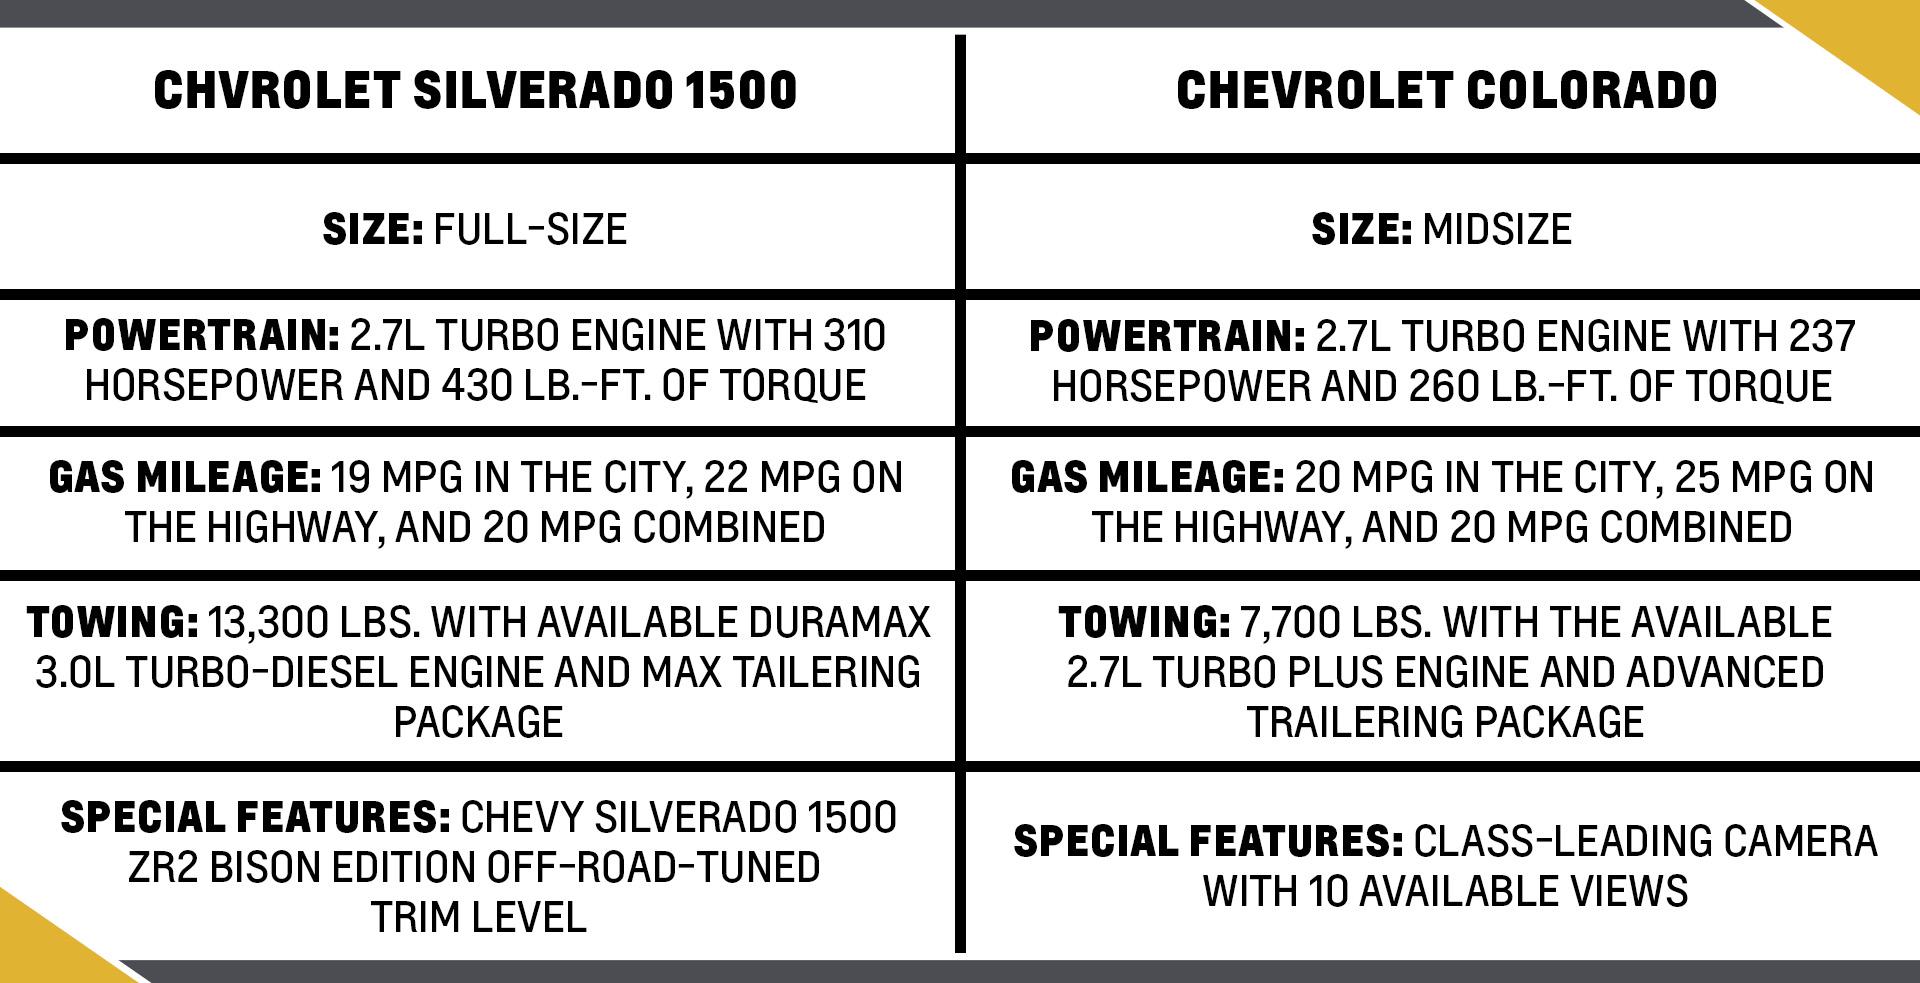 Chevy Colorado Compared to Silverado